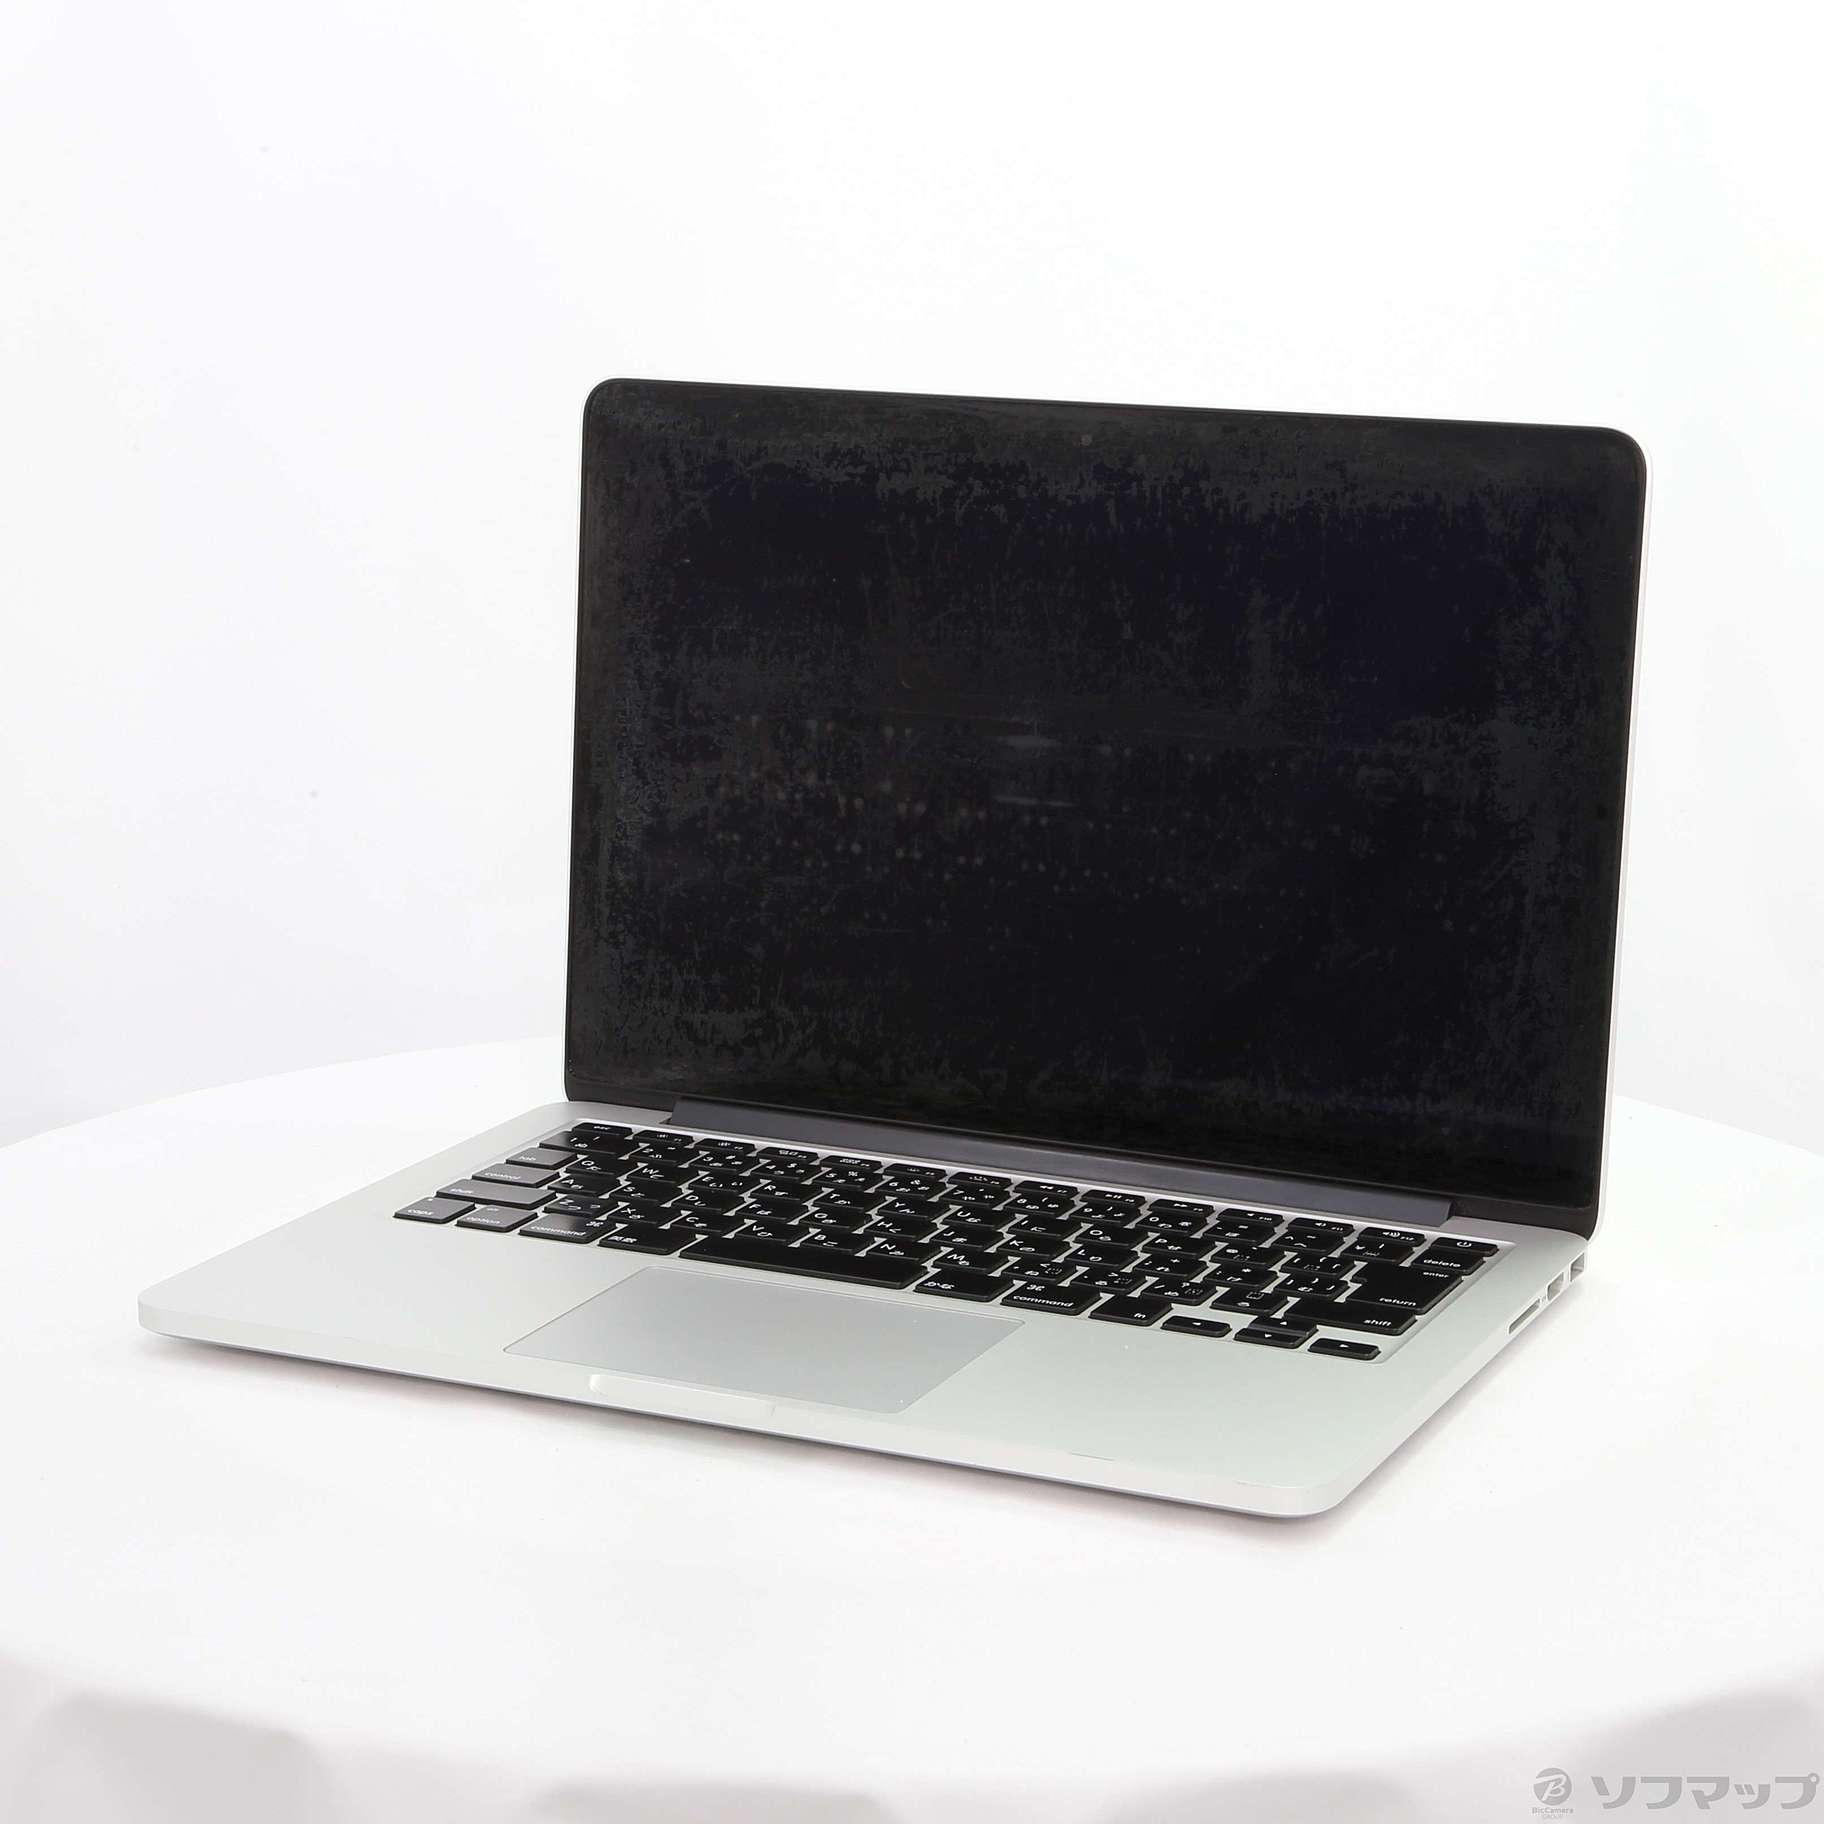 【クーポン対象外】 13-inch Pro MacBook Early MF839J/A 2015 PC周辺機器